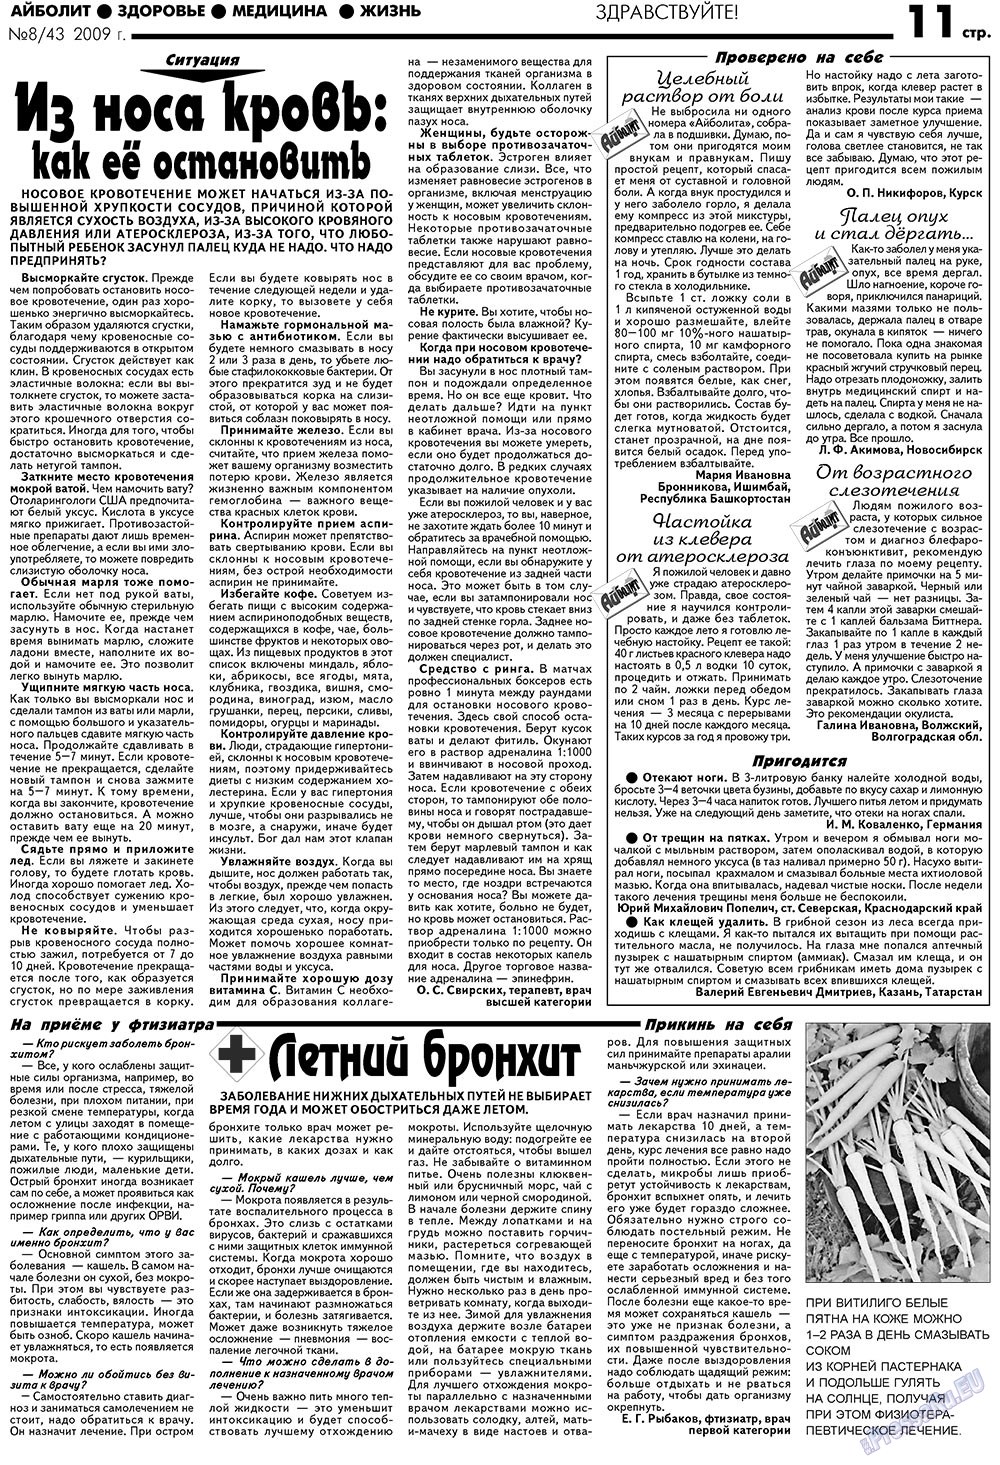 АйБолит, газета. 2009 №8 стр.11